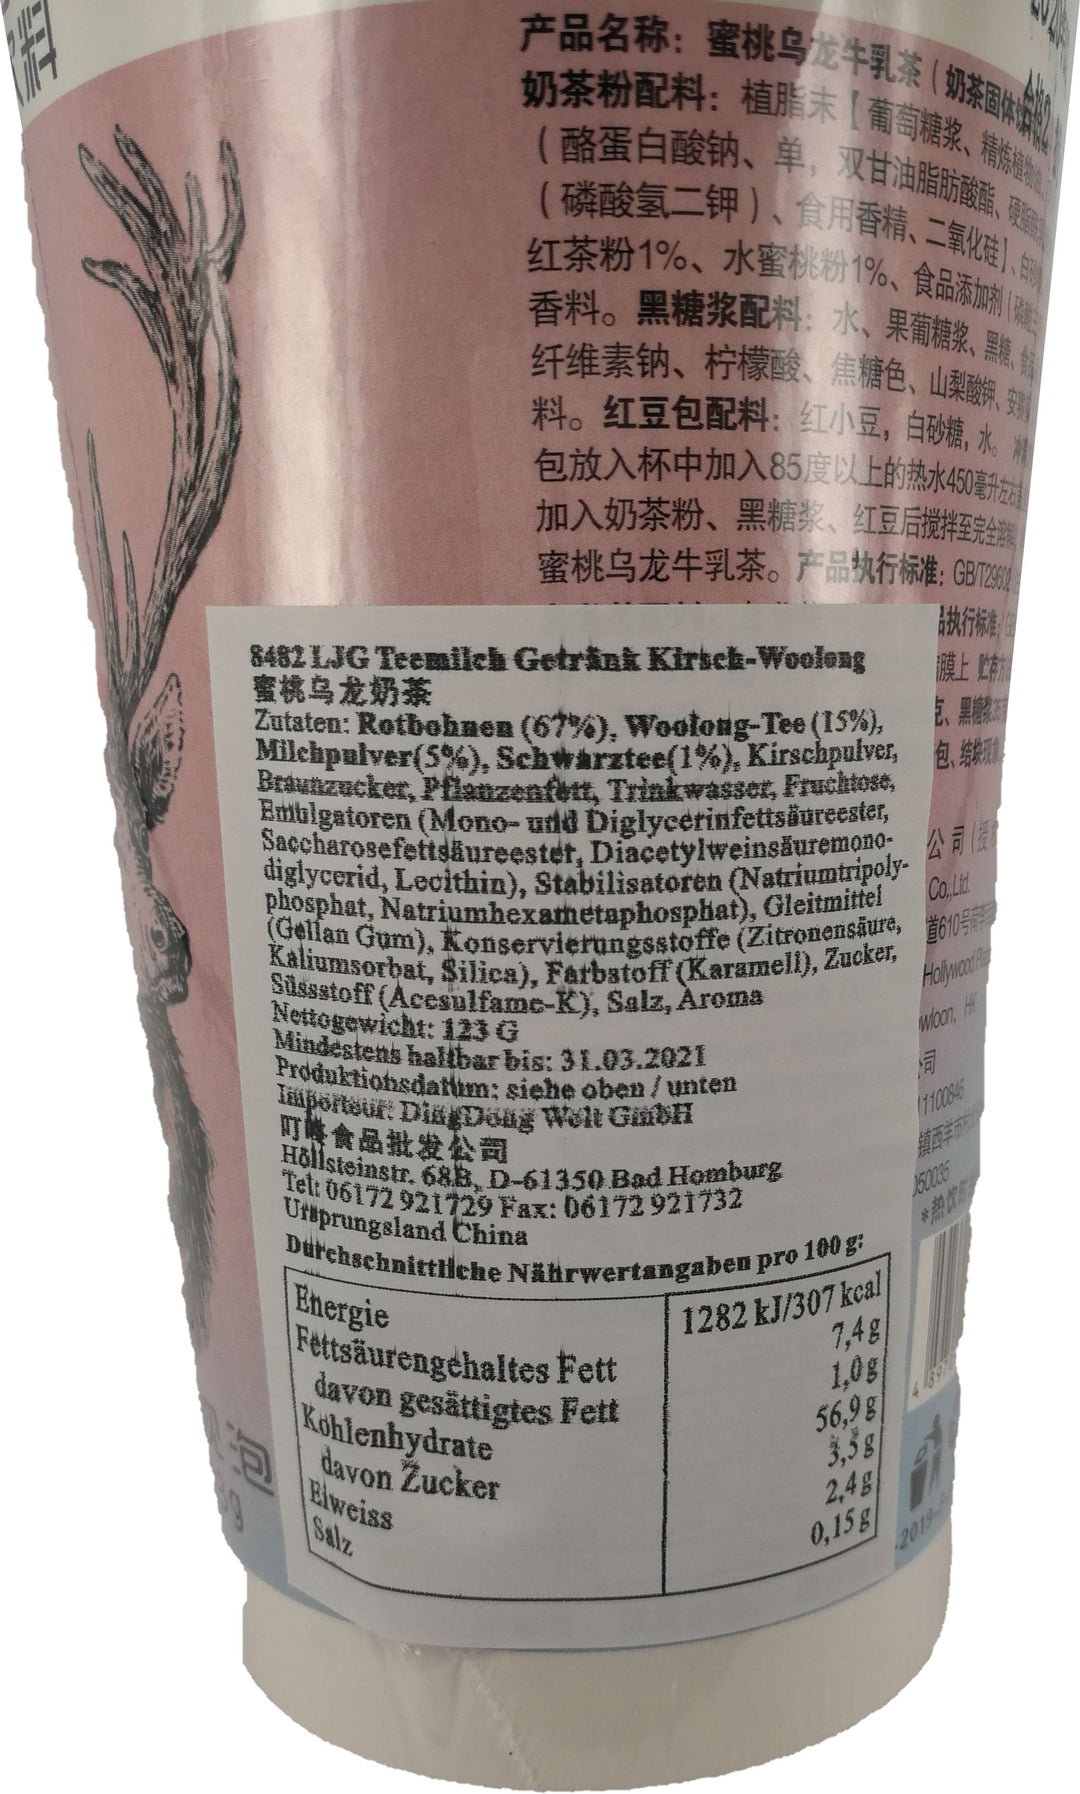 鹿角巷 蜜桃乌龙牛乳茶奶茶固体饮料123克/Teemilch Getränk Kirsch Woolong 123g LJG